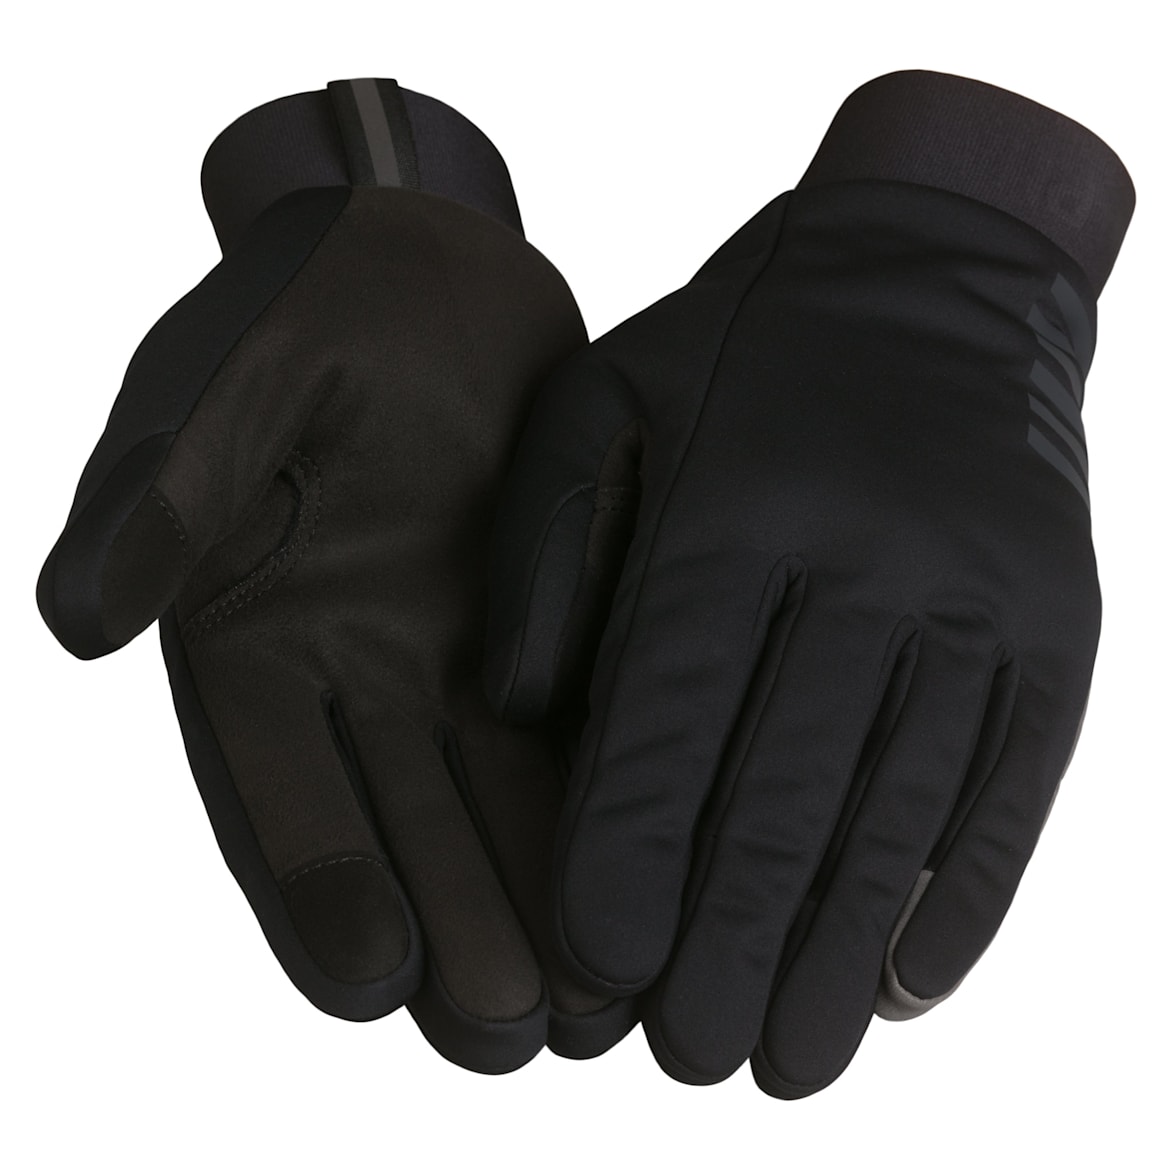 Pro Team Winter Gloves